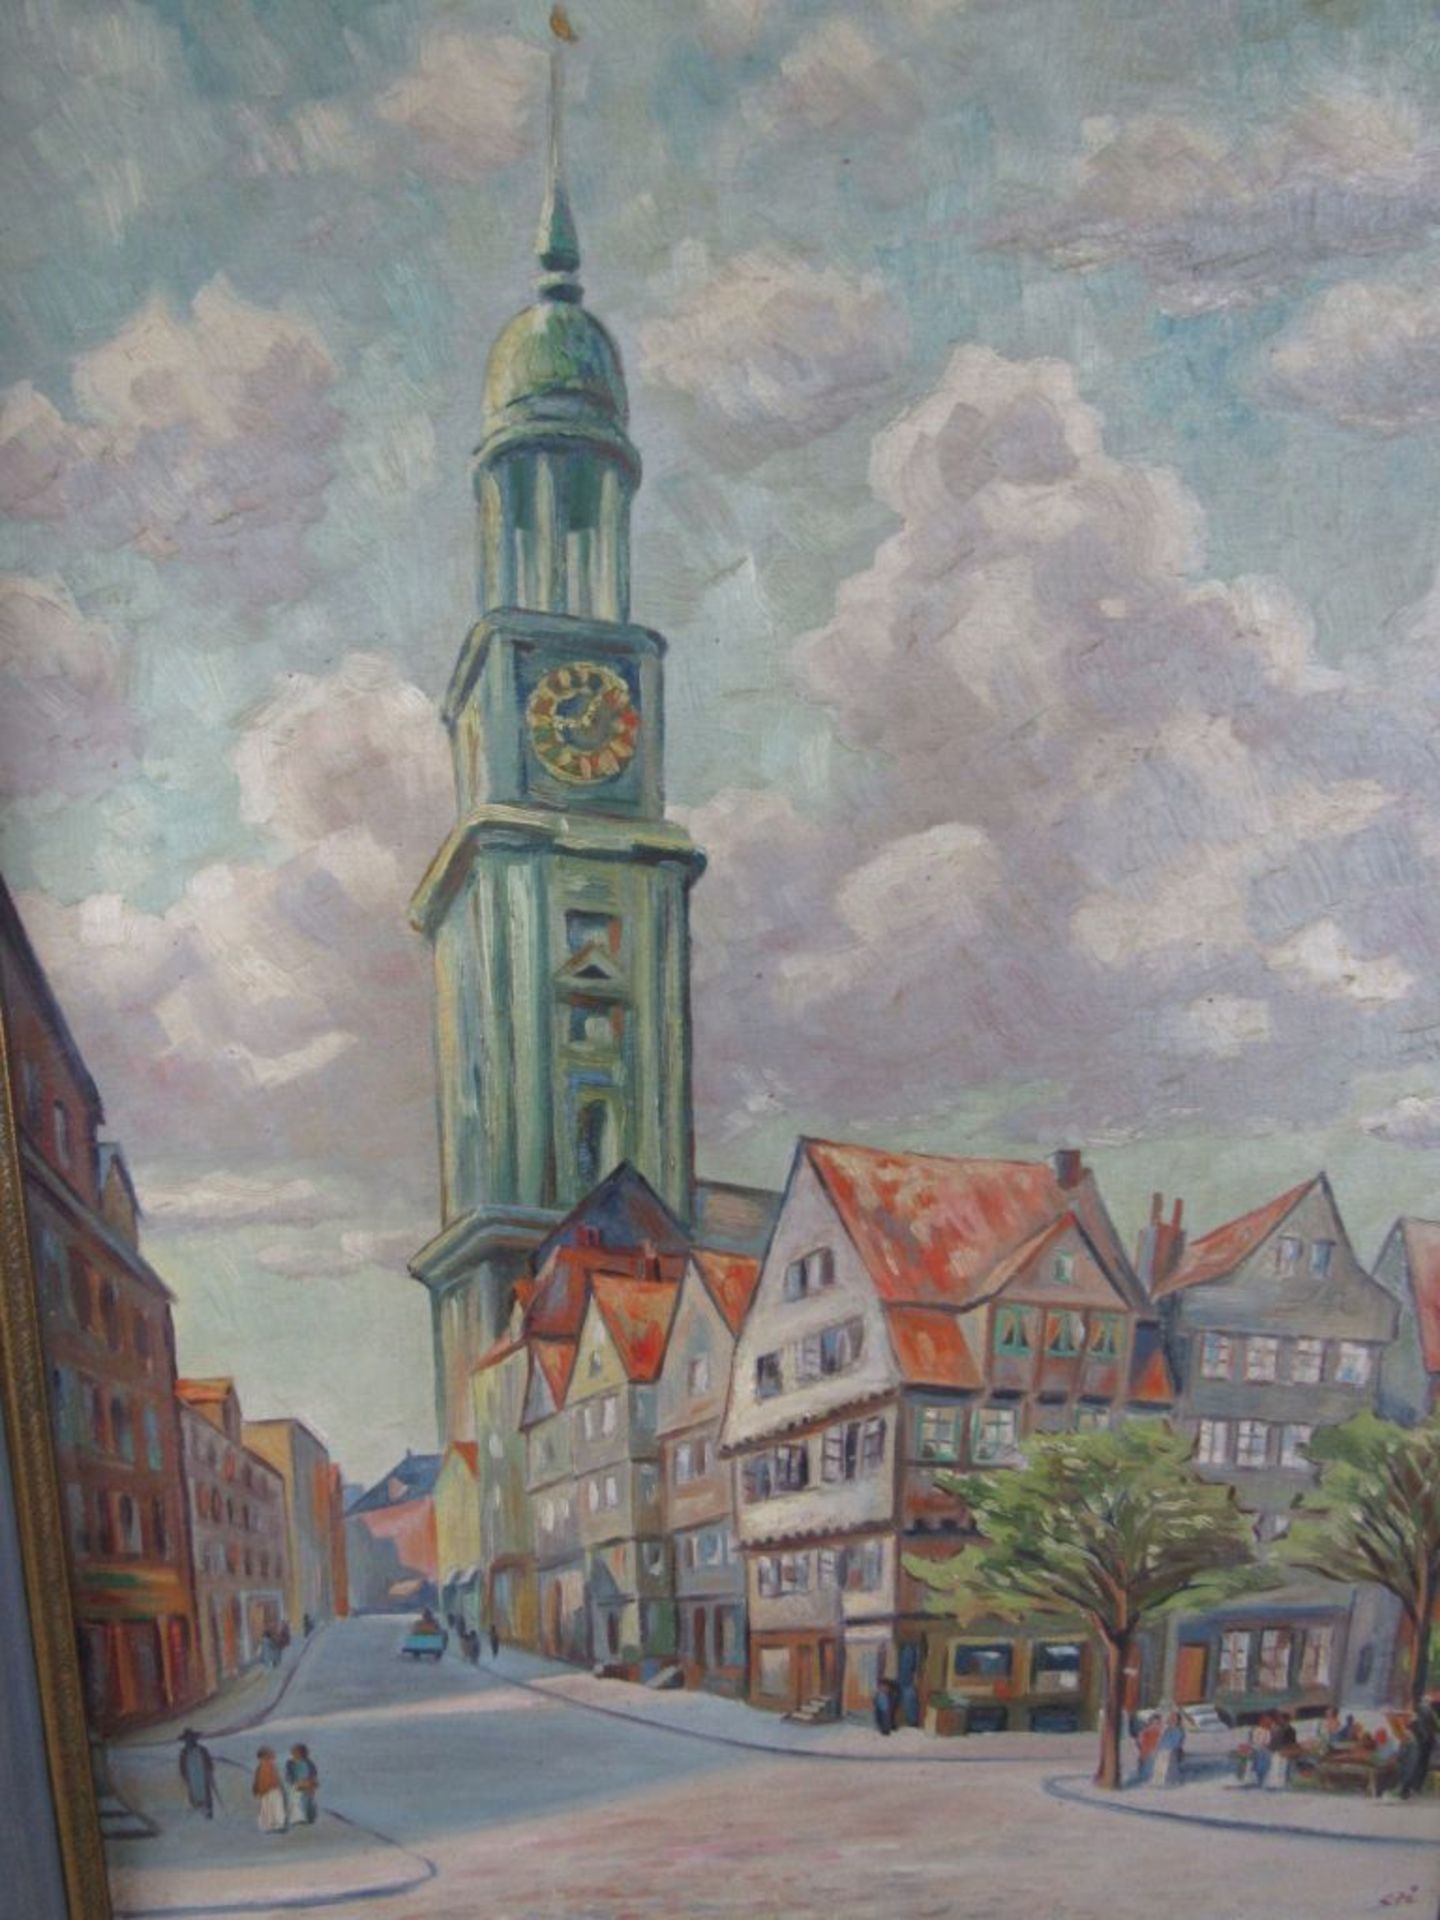 Gemälde Öl auf Malpappe Hamburger Michel monogrammiert STI 50er Jahre gekonnt gemaltca.66x9